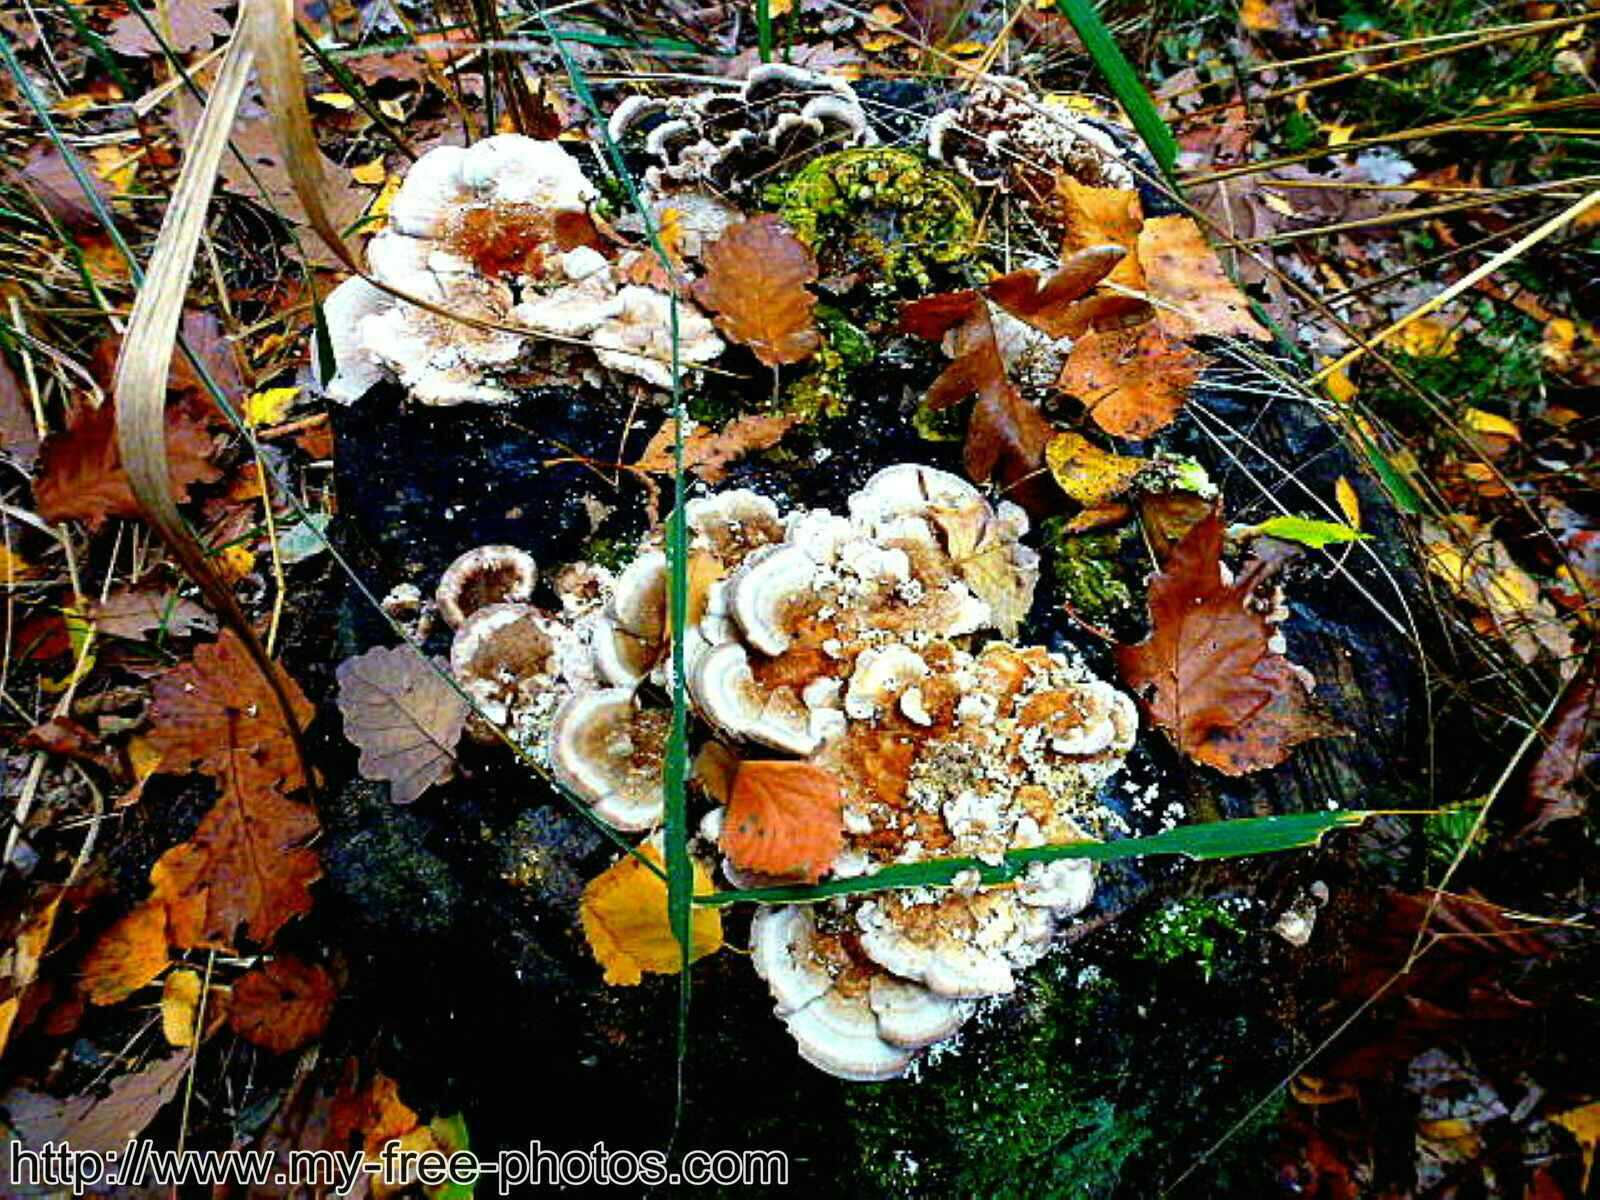  Mushroom with leaves